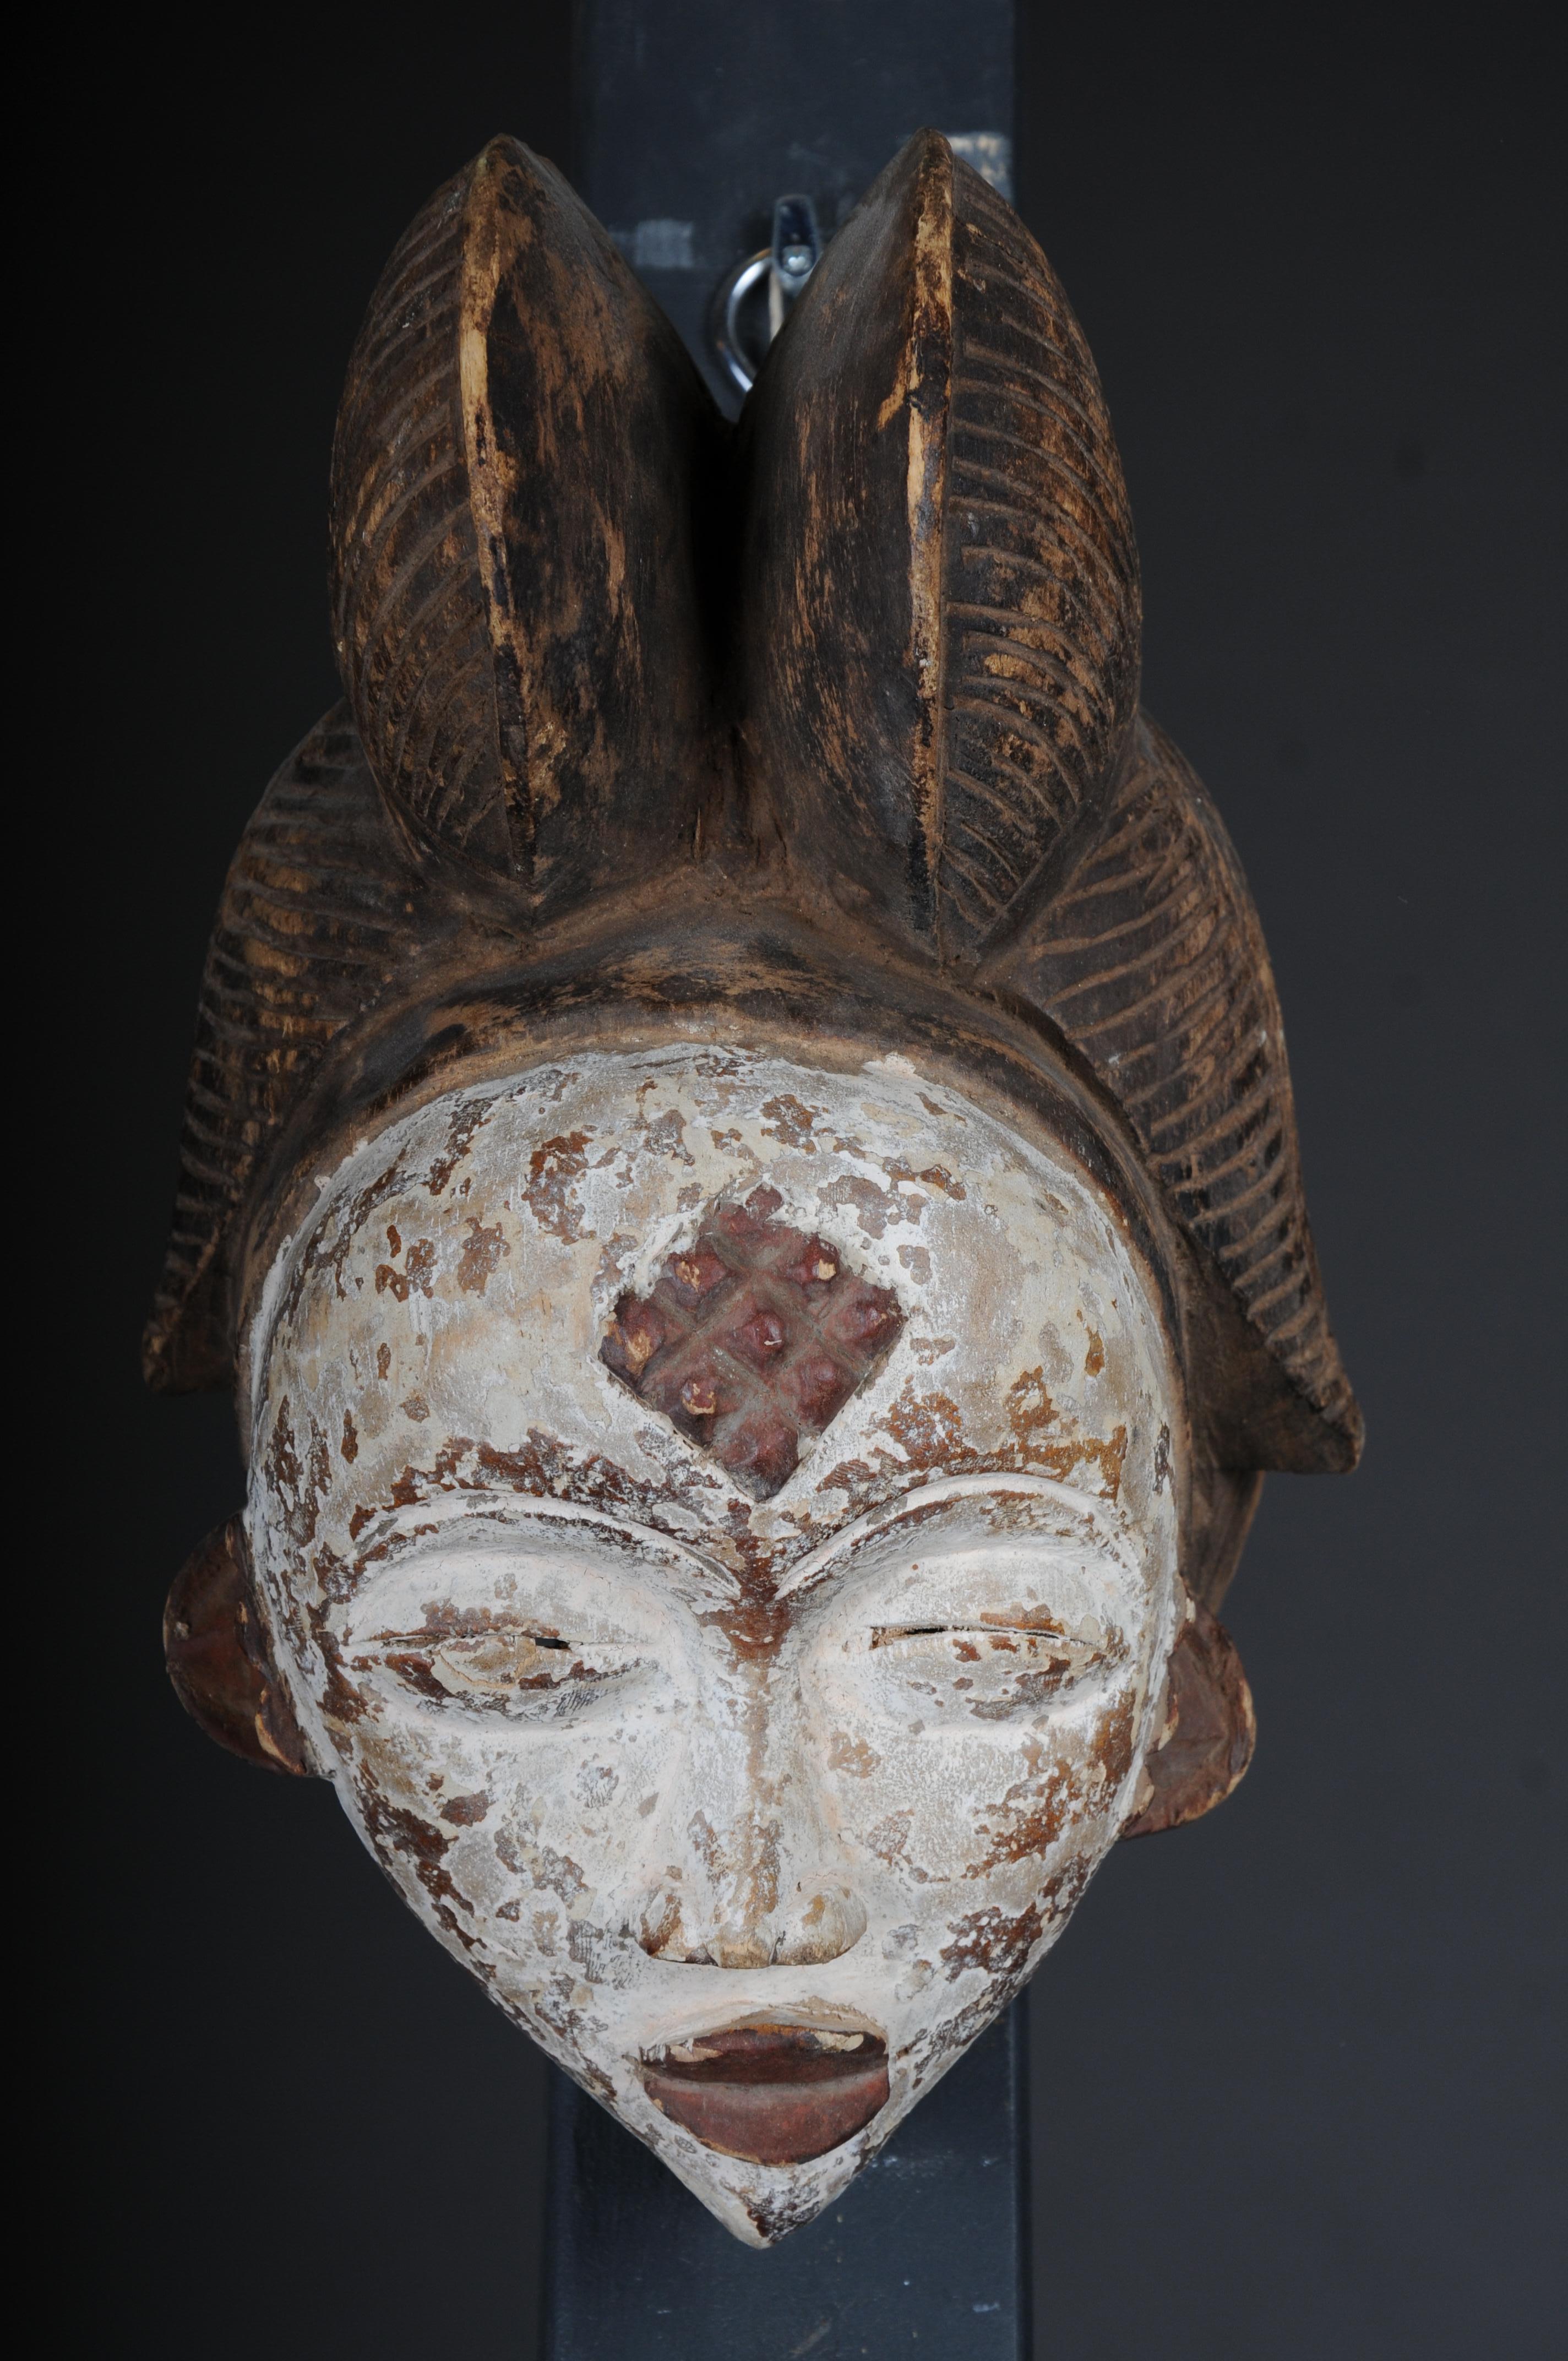 Antike geschnitzte Holzmaske des 20. Jahrhunderts, afrikanische Volkskunst. Aufhängbar.Dekorativ

Massivholz, handgeschnitzt, Afrika wahrscheinlich 20.

Die Gesichtsmaske hat eine Vorrichtung zum Aufhängen.

Sehr dekoratives, zeitloses Kunstwerk.

 